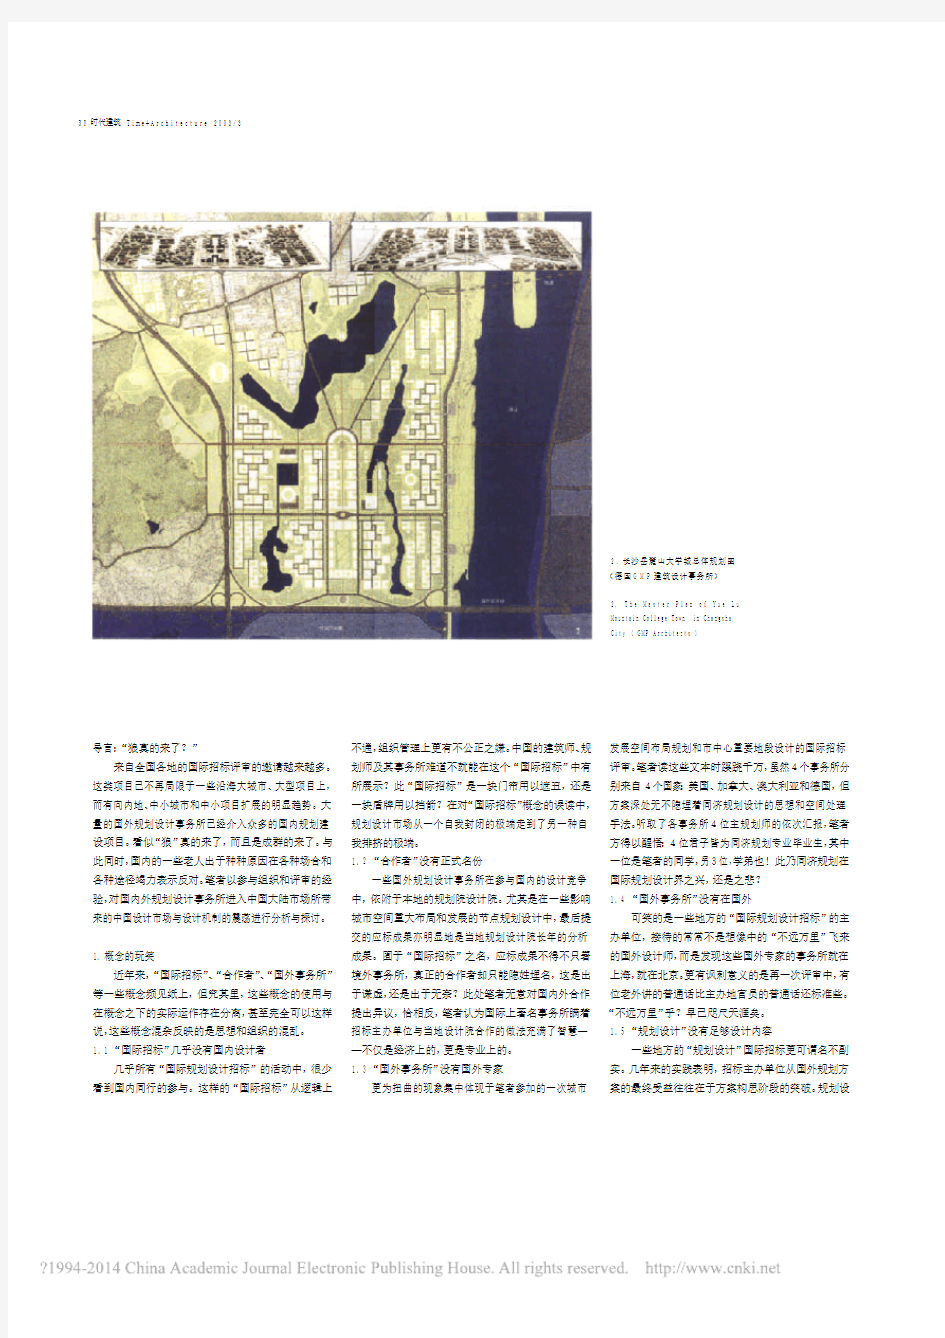 境外规划设计事务所近年在中国大陆发展的记录与思考